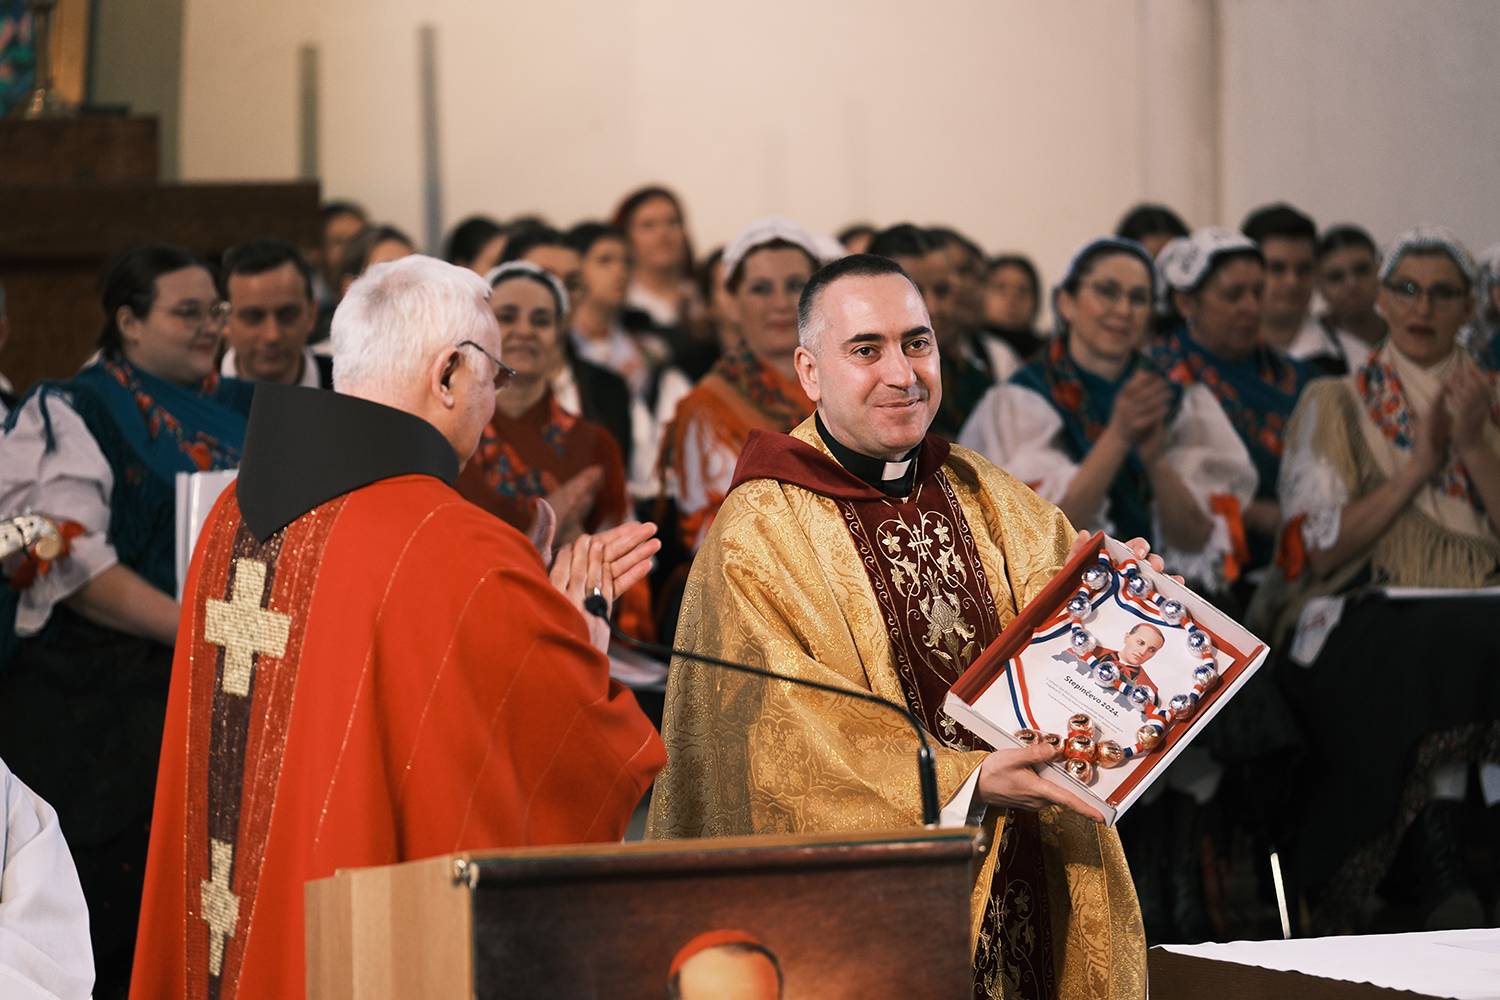 Hrvatska katolička župa u Salzburgu proslavila je svetkovinu svog nebeskog zaštitnika bl. Alojzija Stepinca